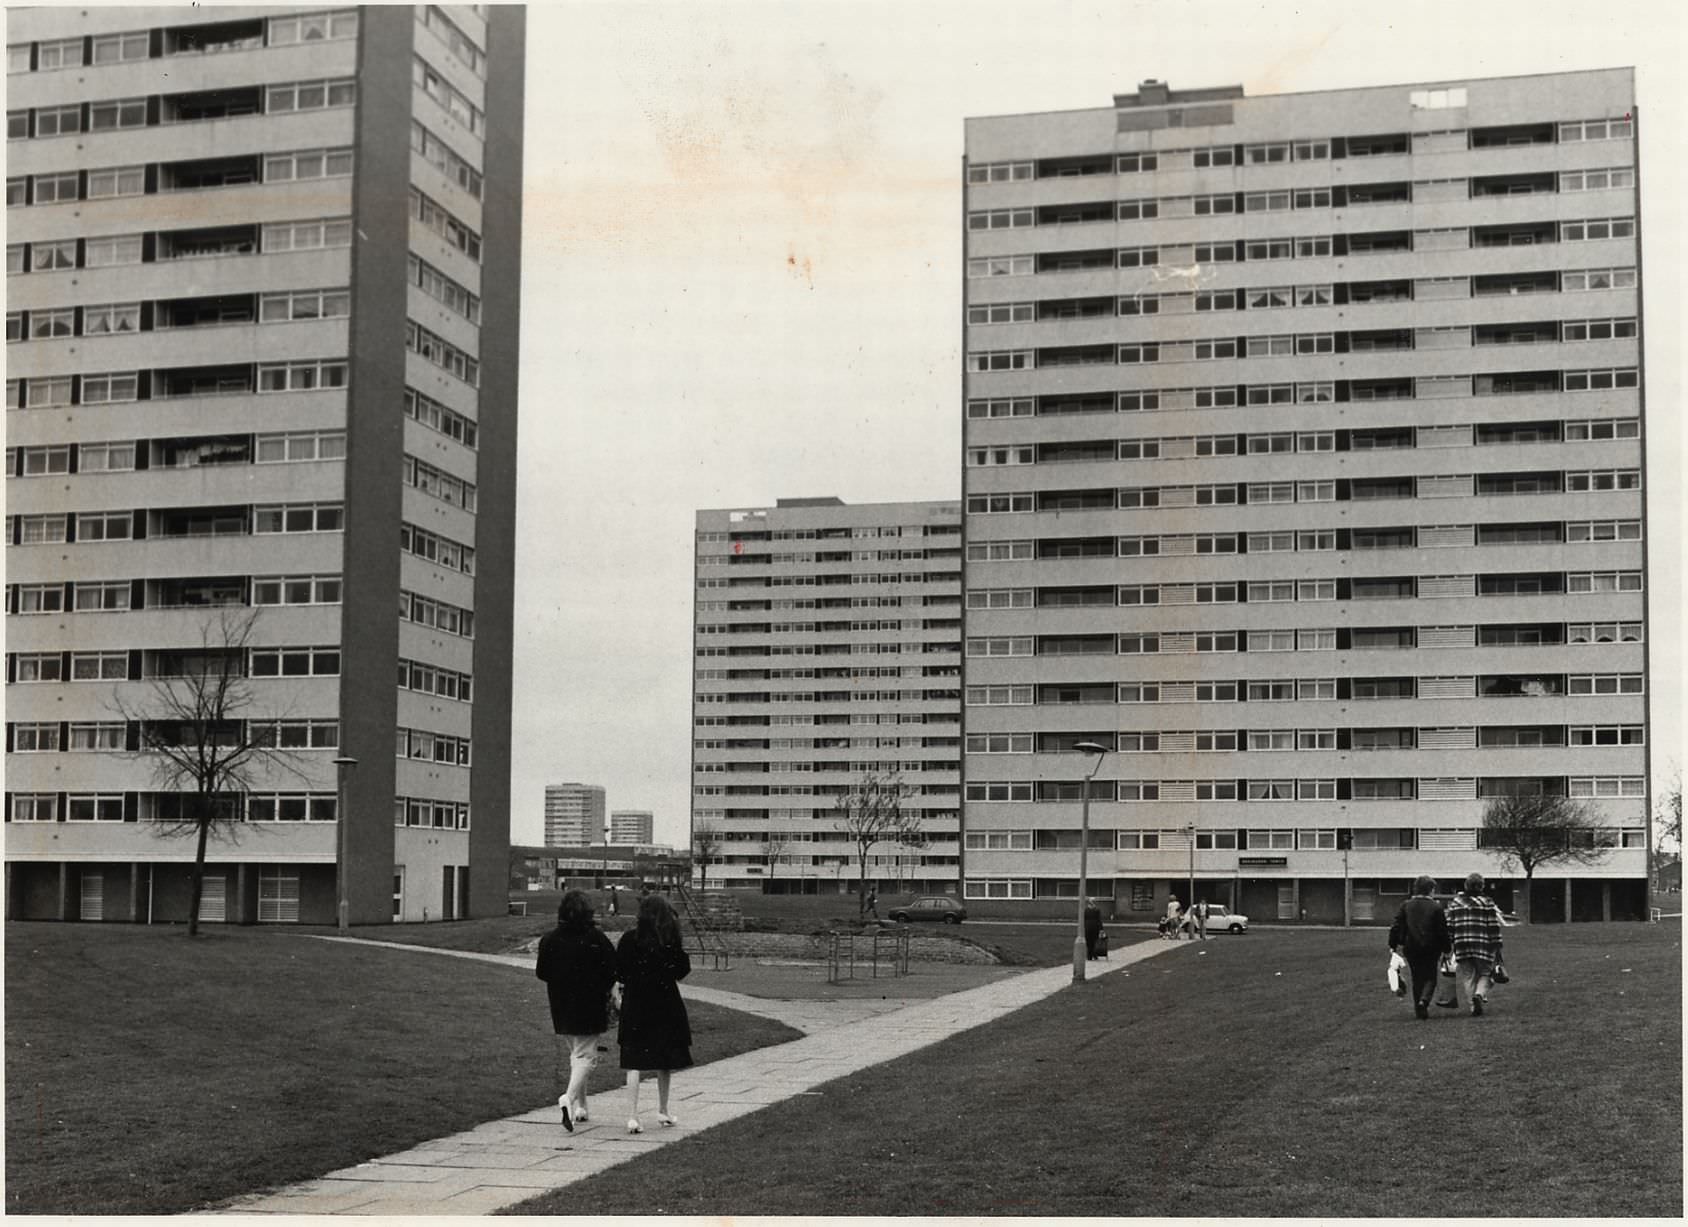 Castle Vale flats, 22nd April, 1983.